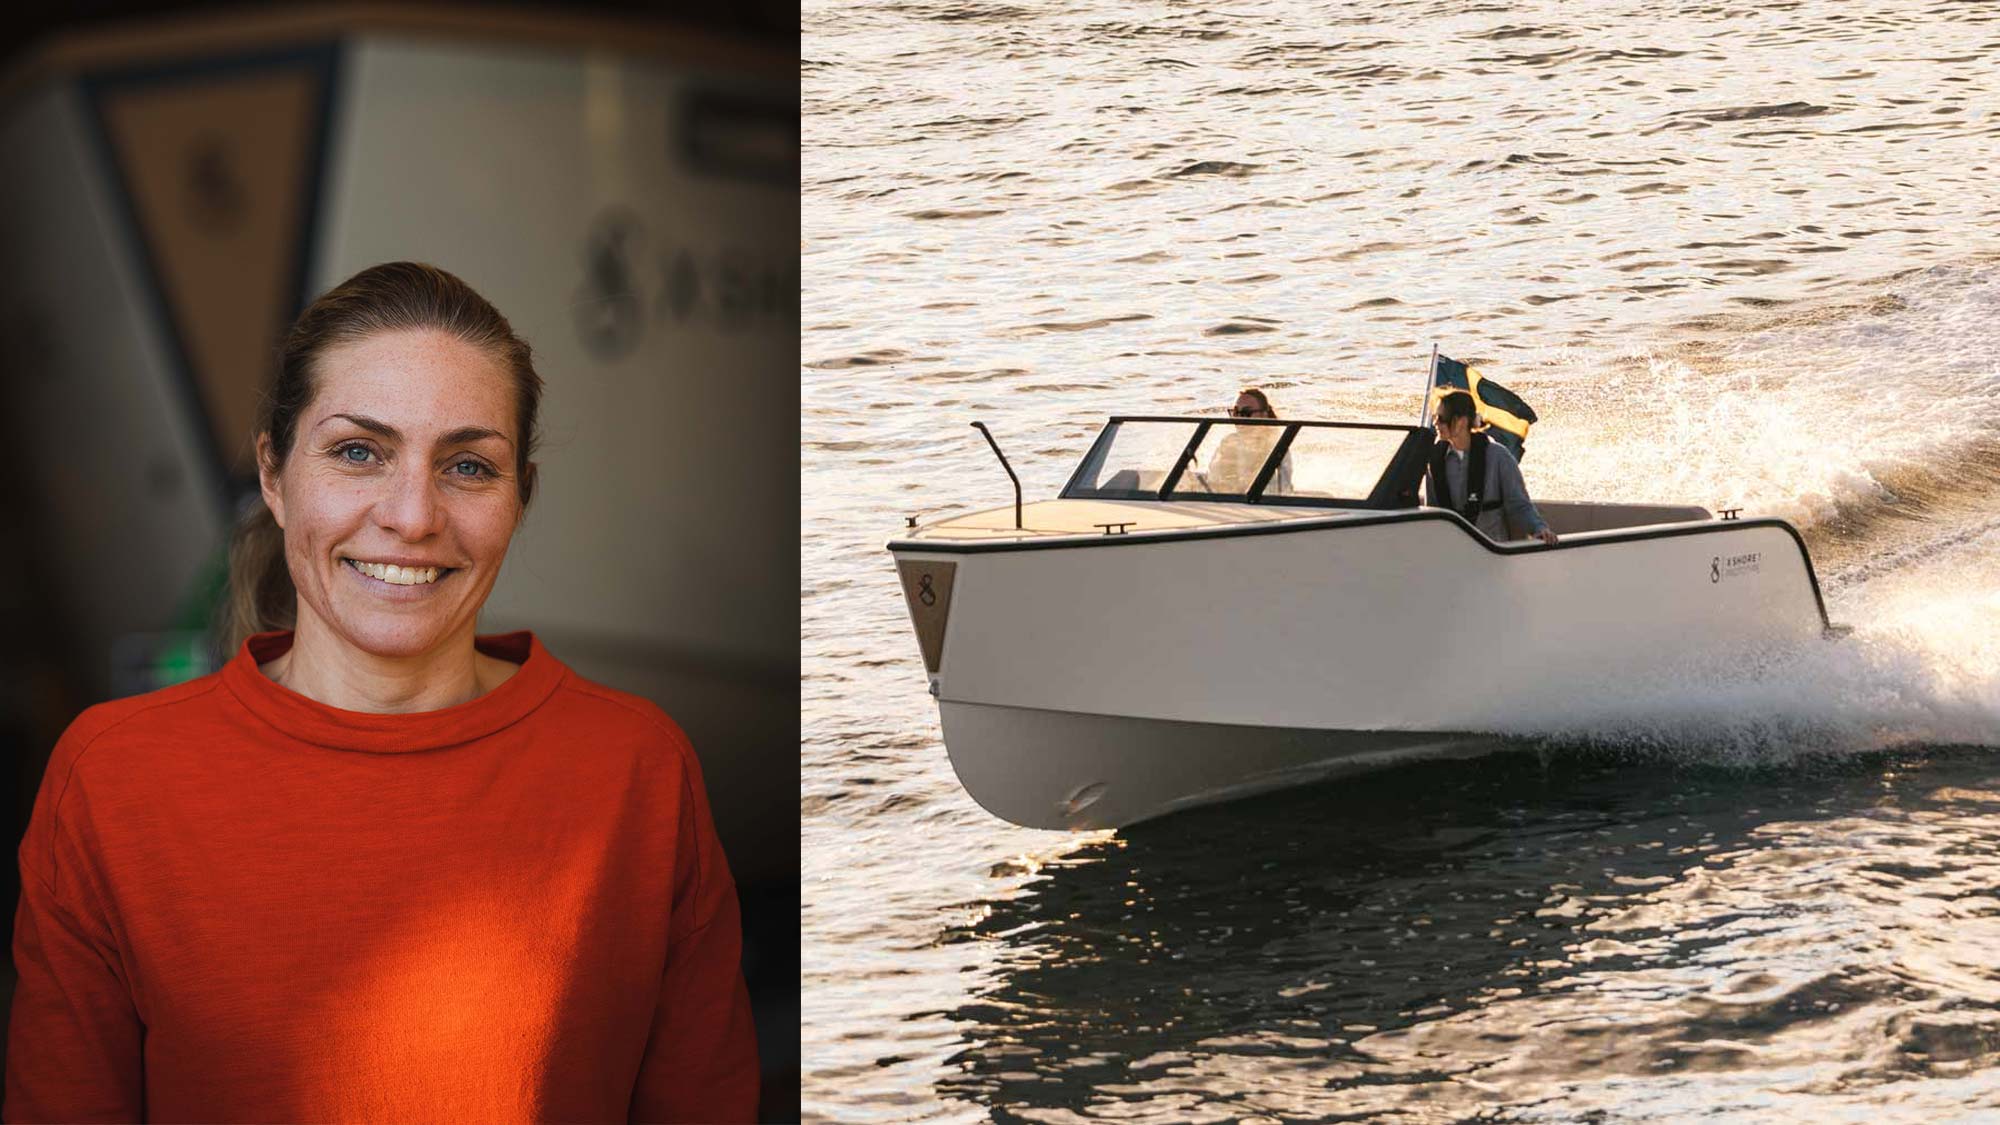 Svenska elbåtspionjären vill inspirera andra: “Delar gärna med oss av vår kunskap”